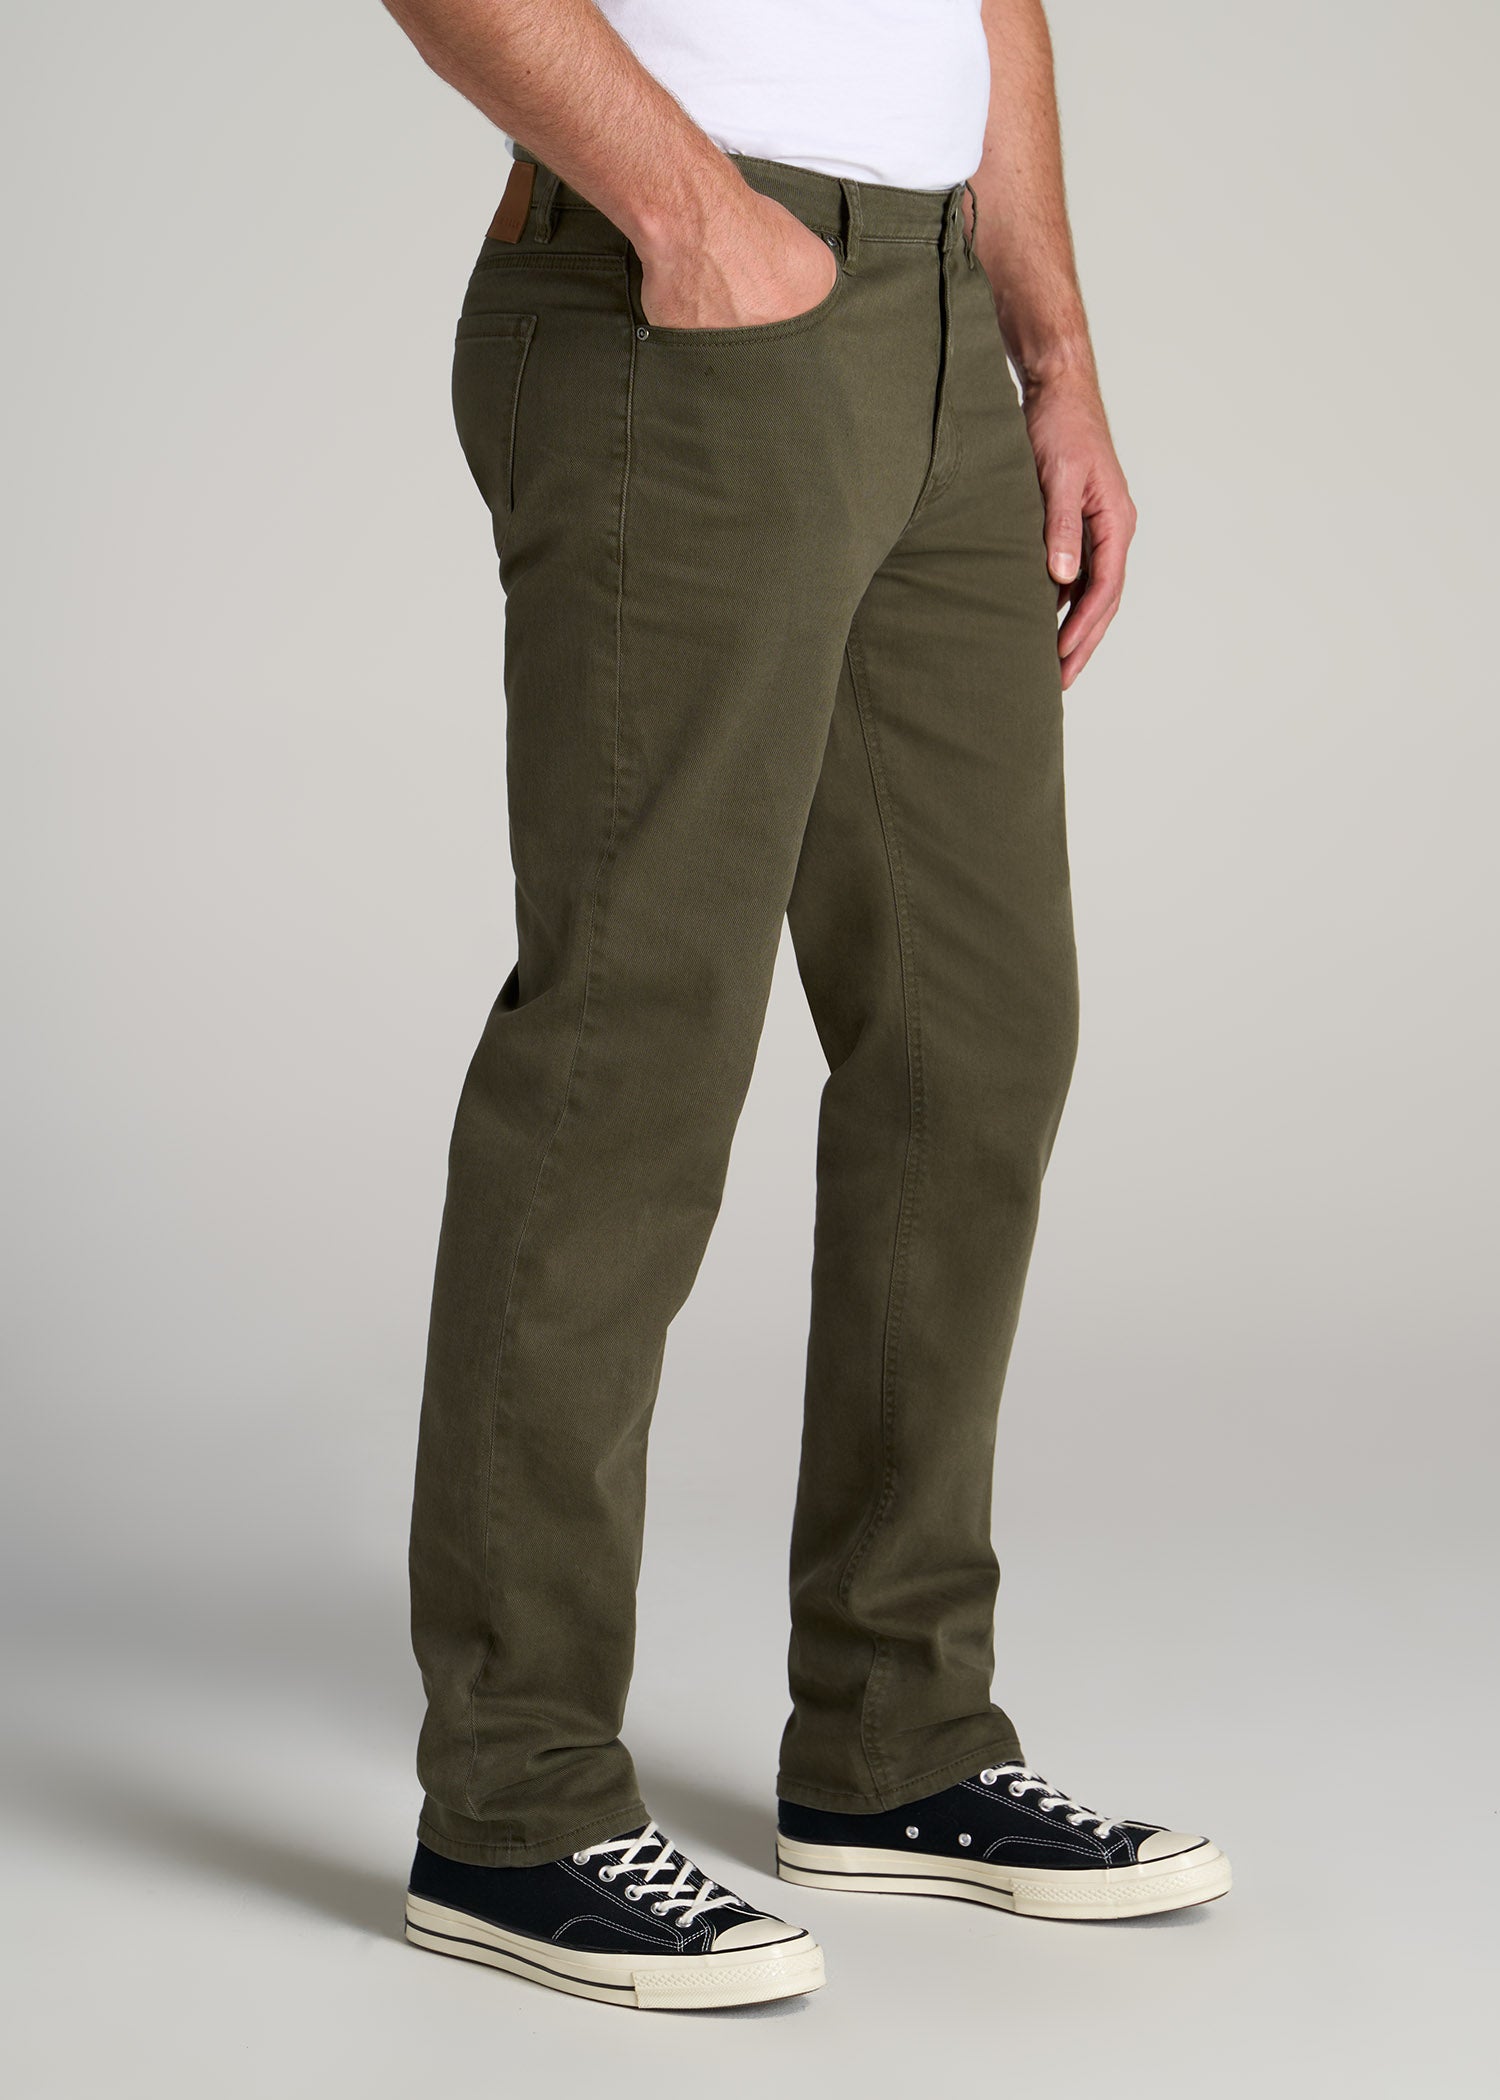 American Tall Men J1 Jeans Olive Green Wash Side ?v=1664828678